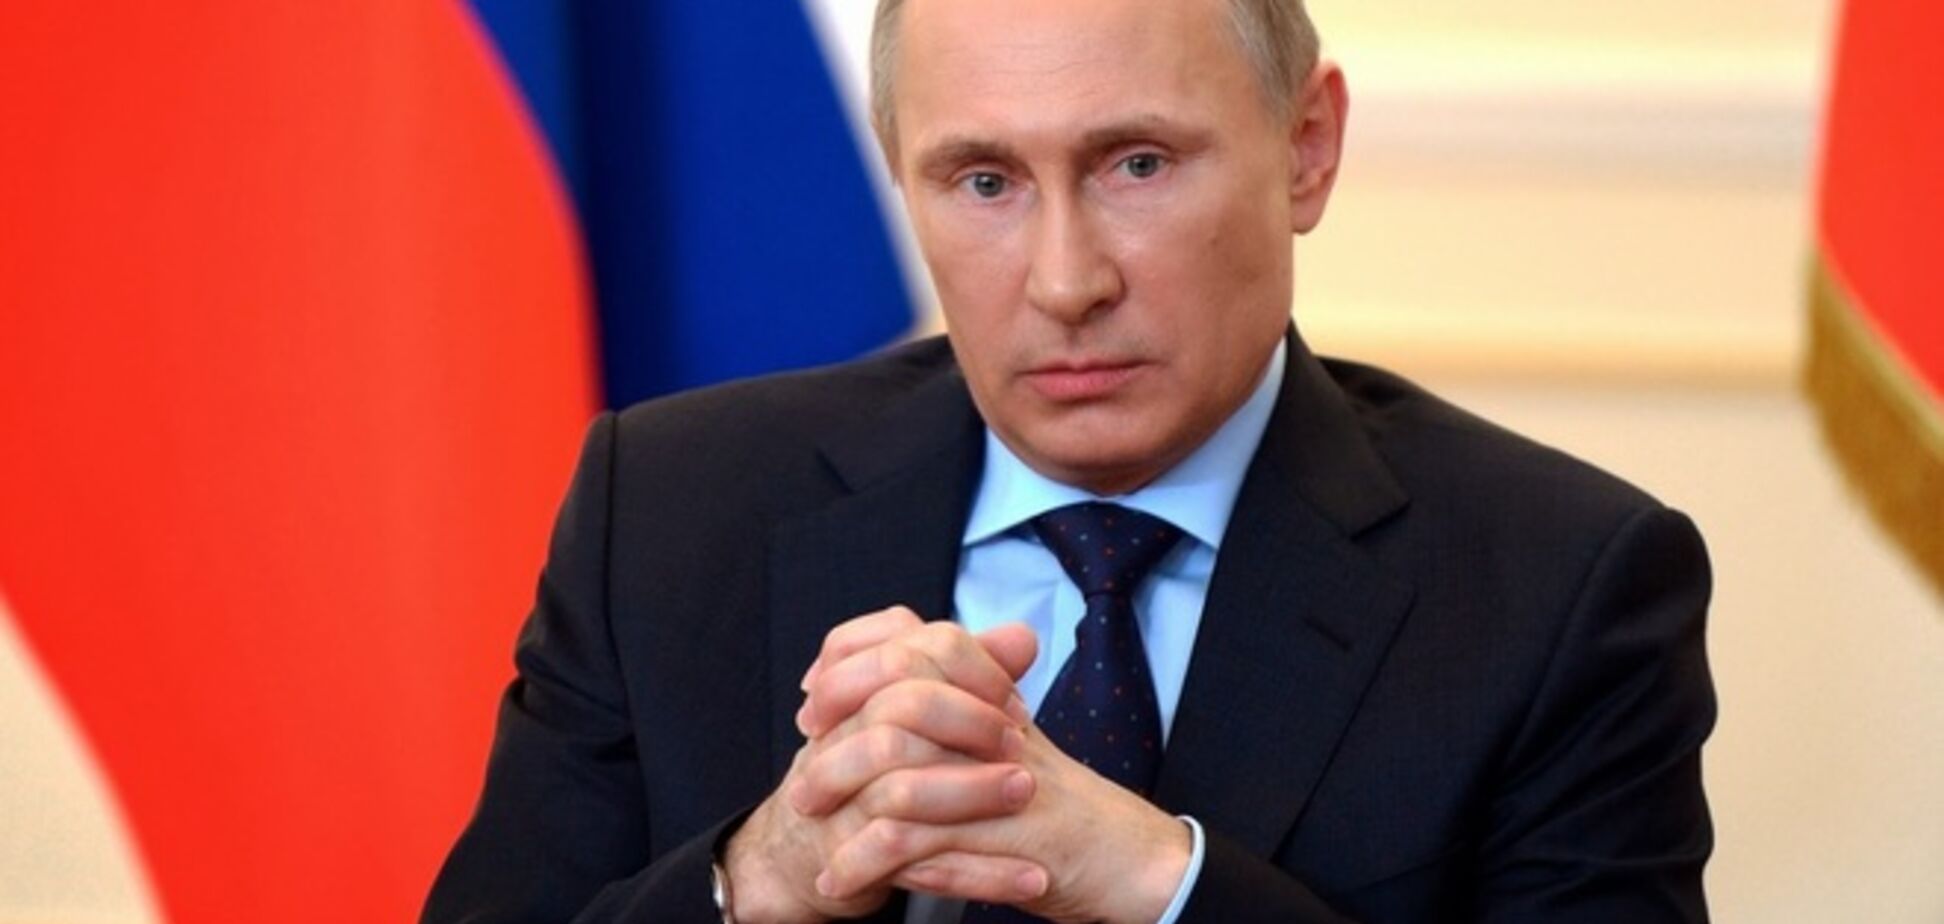 Ведущие европейские эксперты прогнозируют дальнейшее поведение Путина относительно Украины